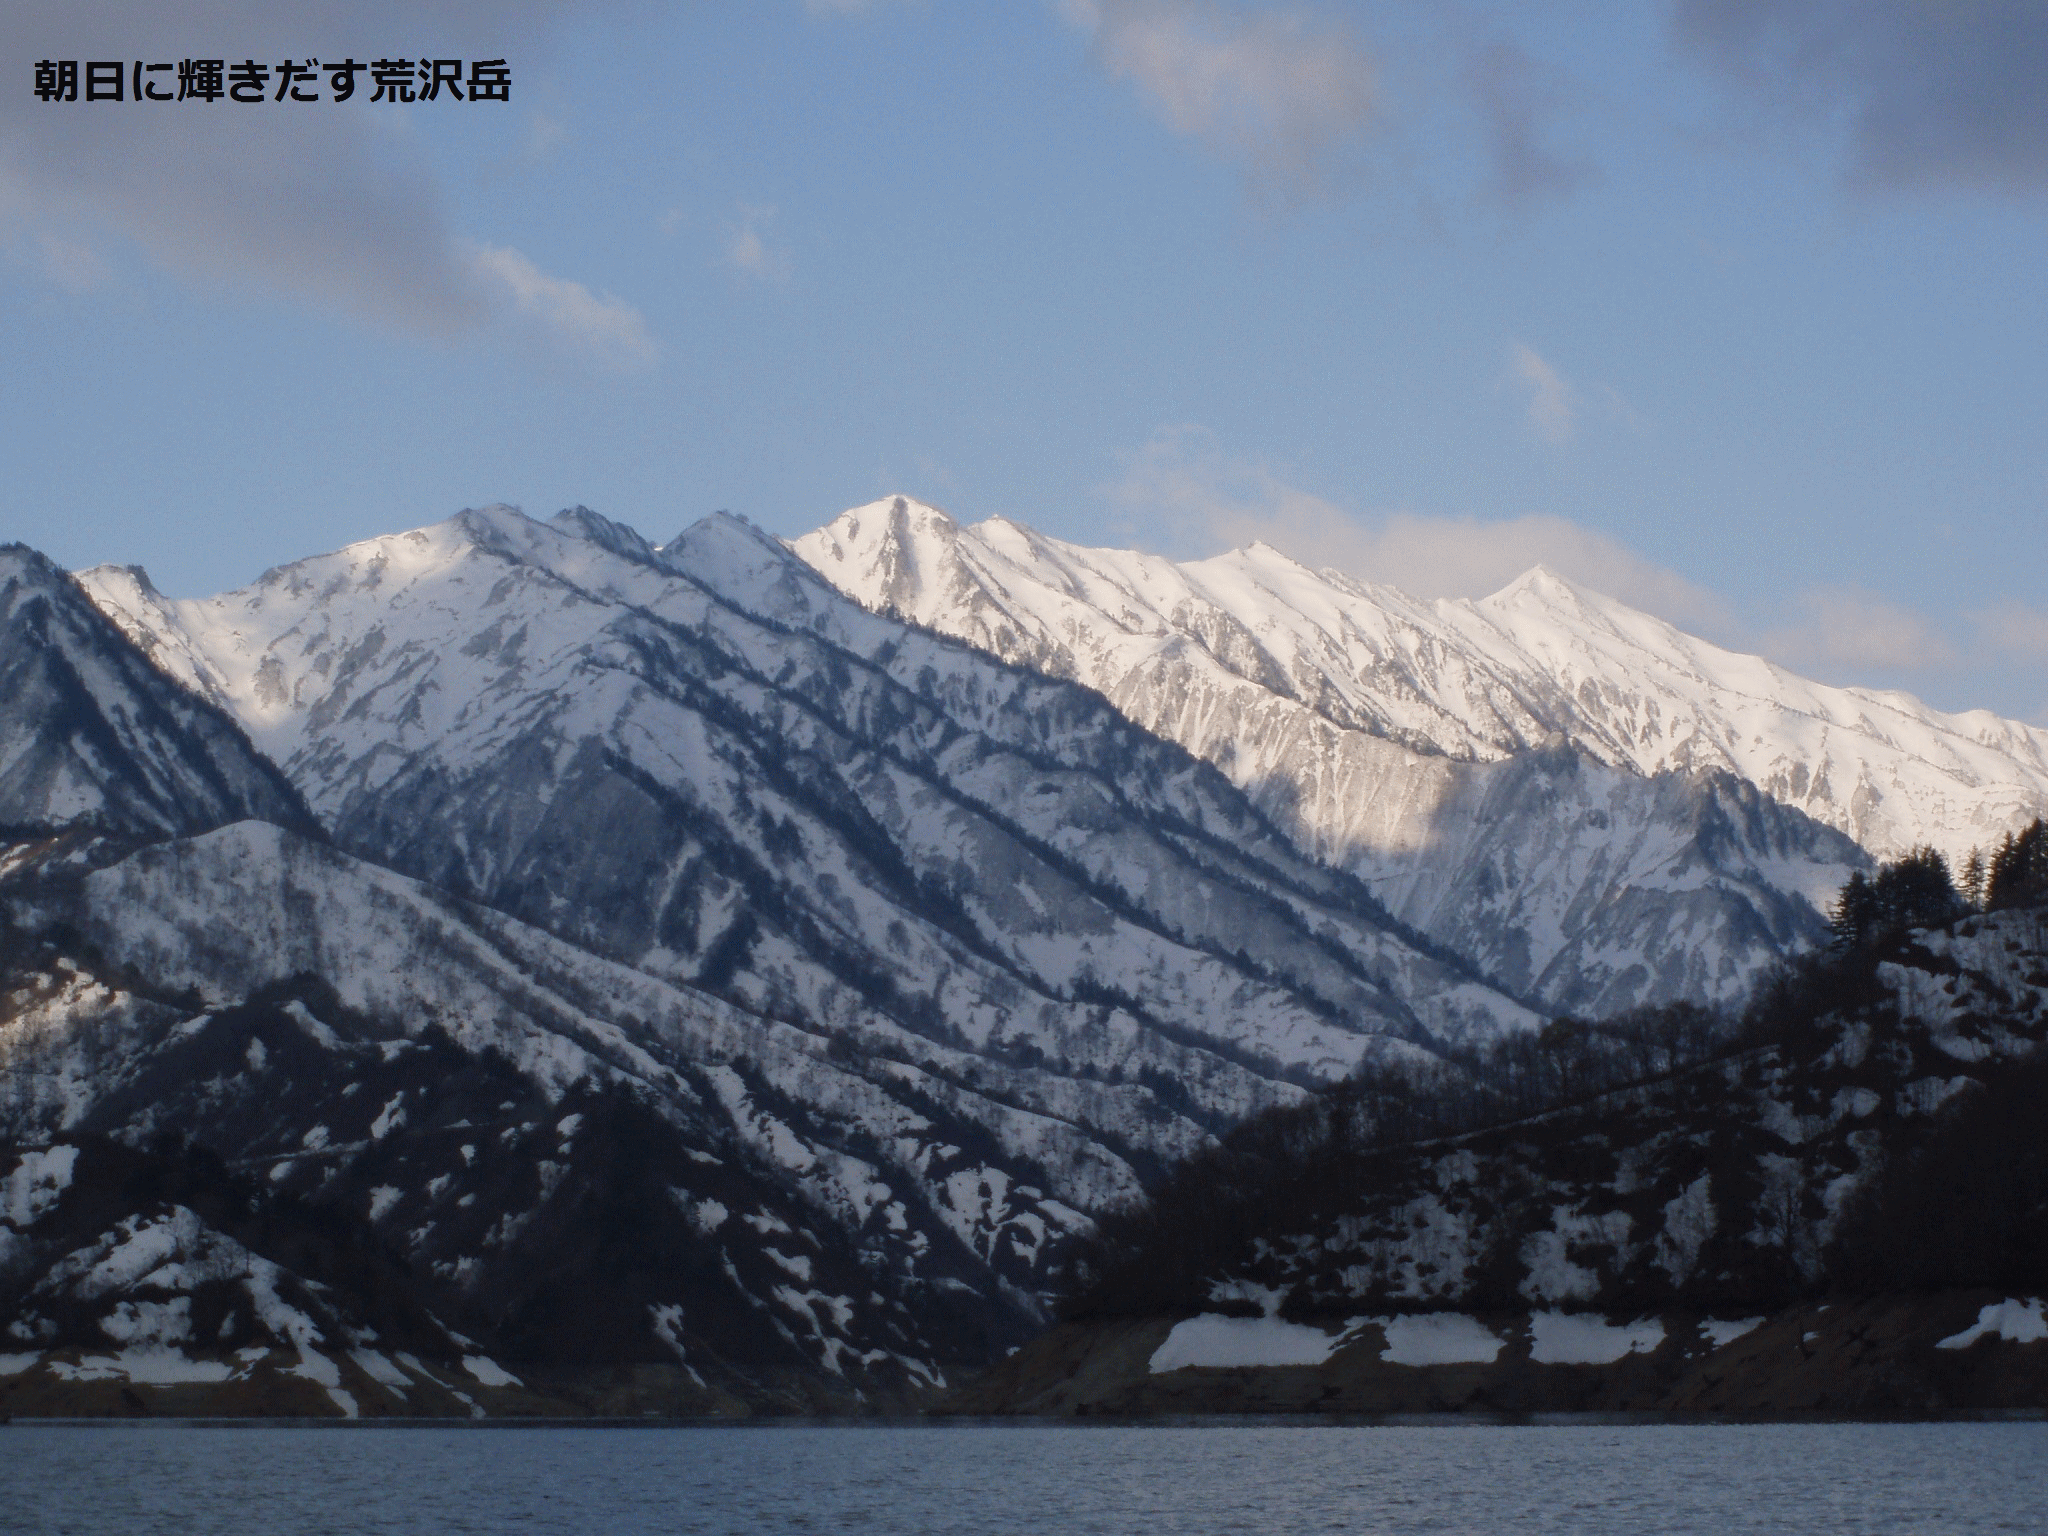 田子倉湖、銀山湖の岩魚とサクラマス